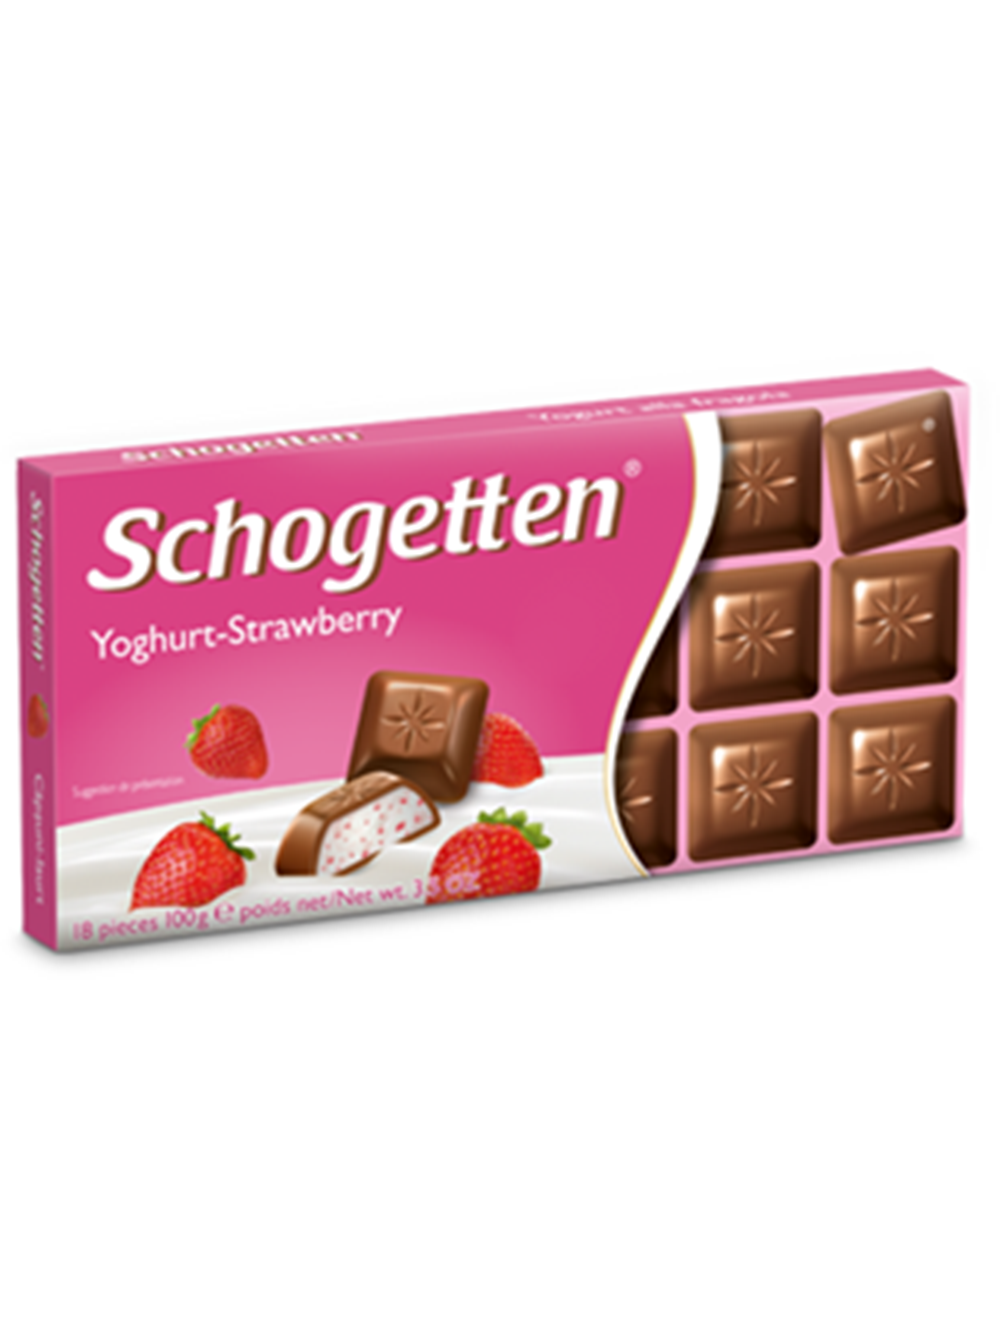 Wholesale Schogetten Yoghurt-Strawberry